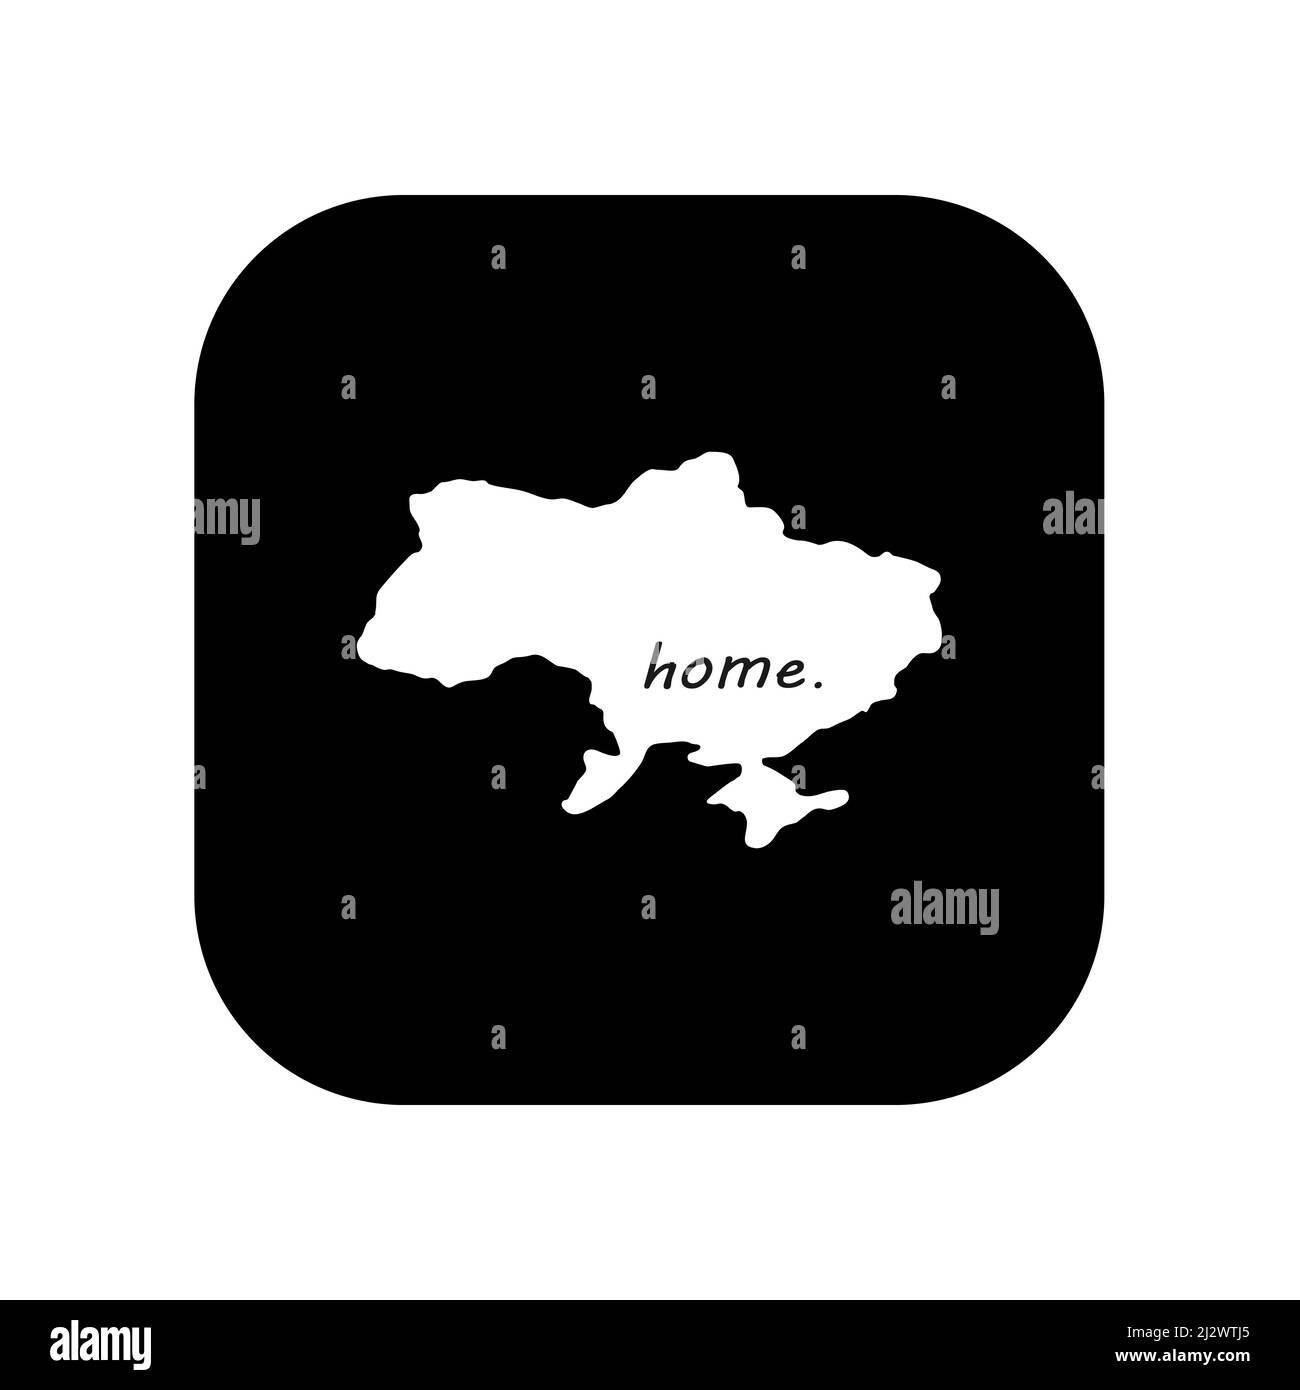 Icona per l'uso in applicazioni di vari gadget. Mappa del paese l'Ucraina è la mia casa. Stile minimalista e piatto. Illustrazione Vettoriale